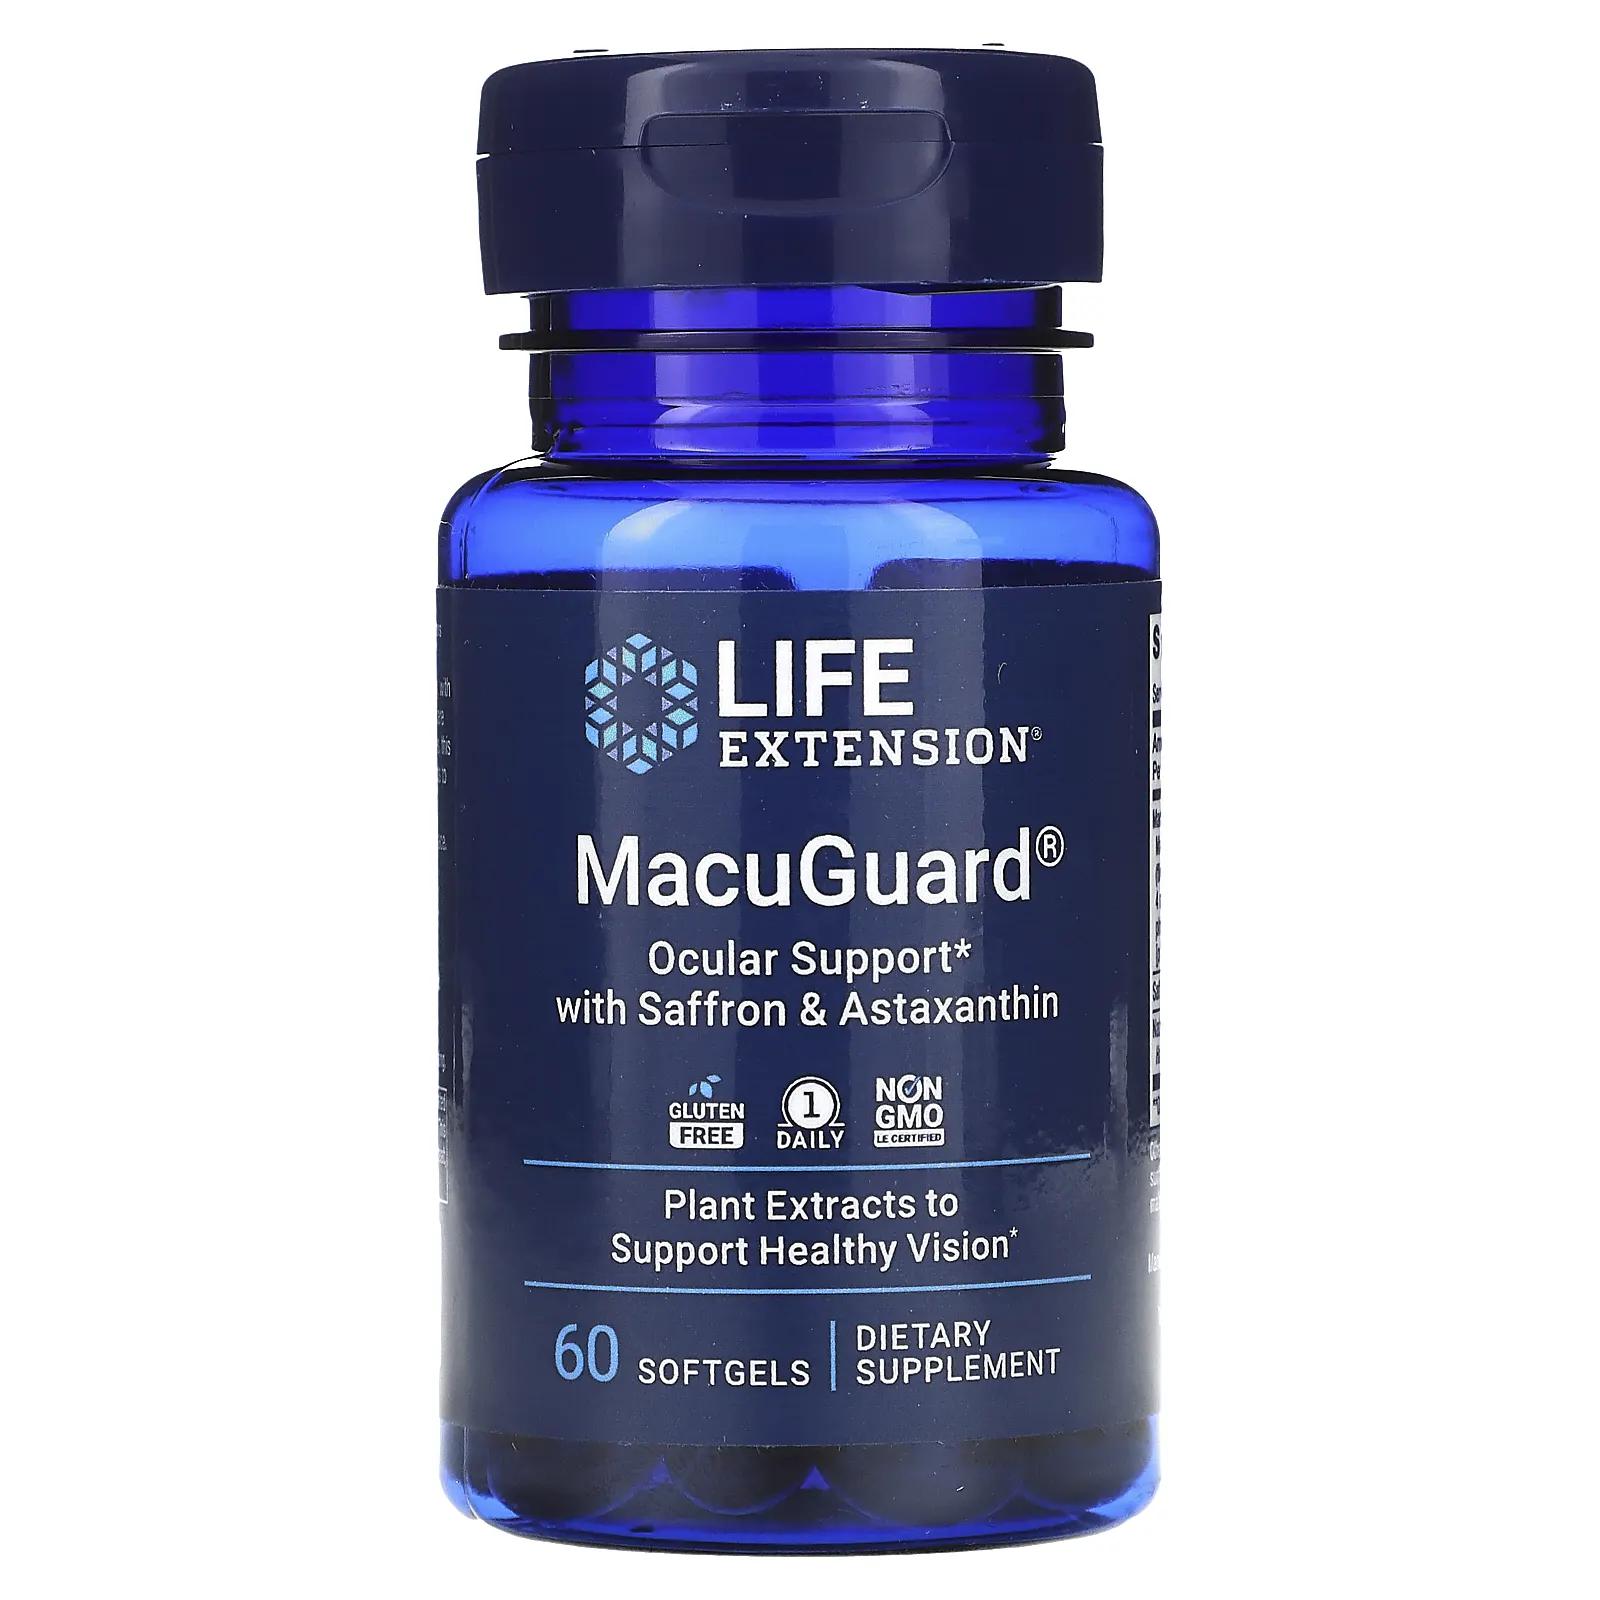 продление жизни супер мирафорте со стандартами life extension Life Extension MacuGuard поддержка зрения с шафраном и астаксантином 60 мягких капсул